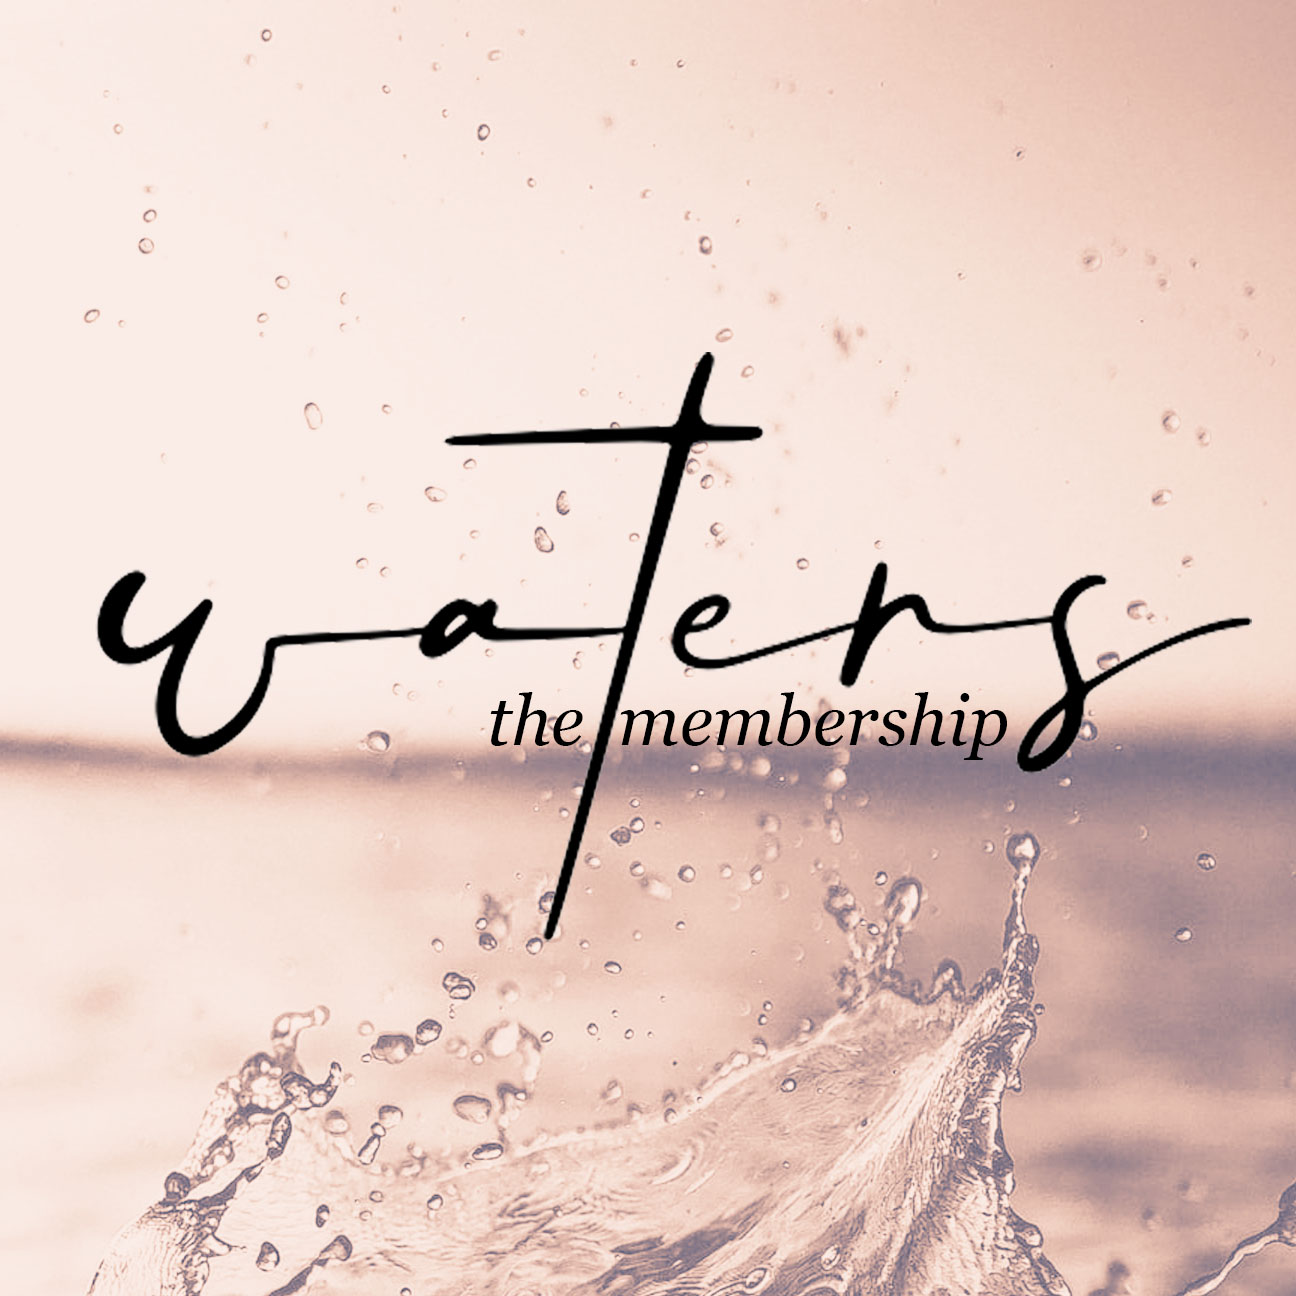 waters the membership instagram